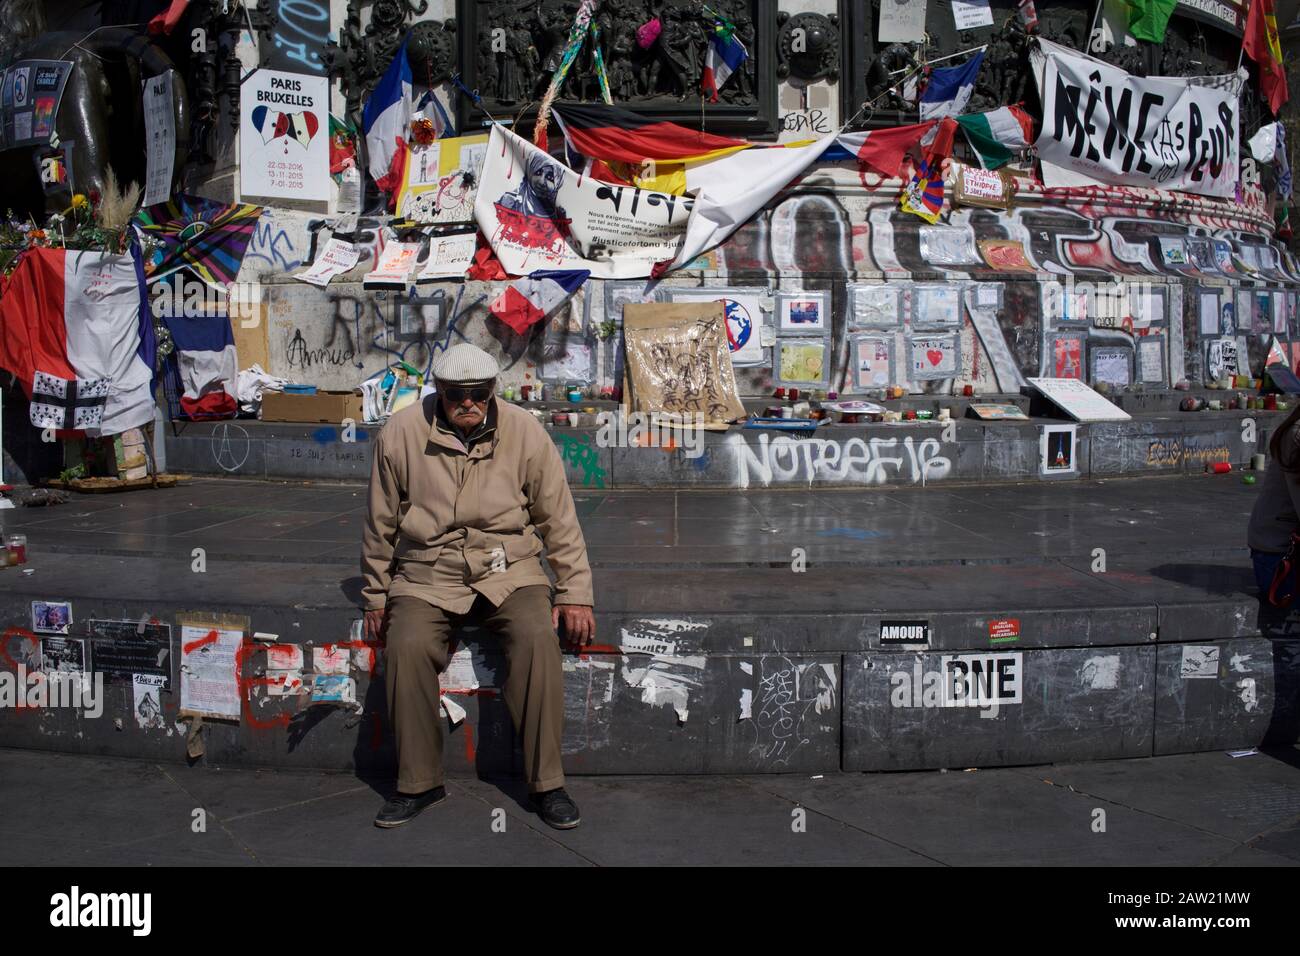 Uomo seduto su gradini della statua di Marianne di fronte ai messaggi commemorativi vittime degli attacchi di Parigi e Bruxelles, Place de la République, Parigi, Francia - aprile 2016 Foto Stock